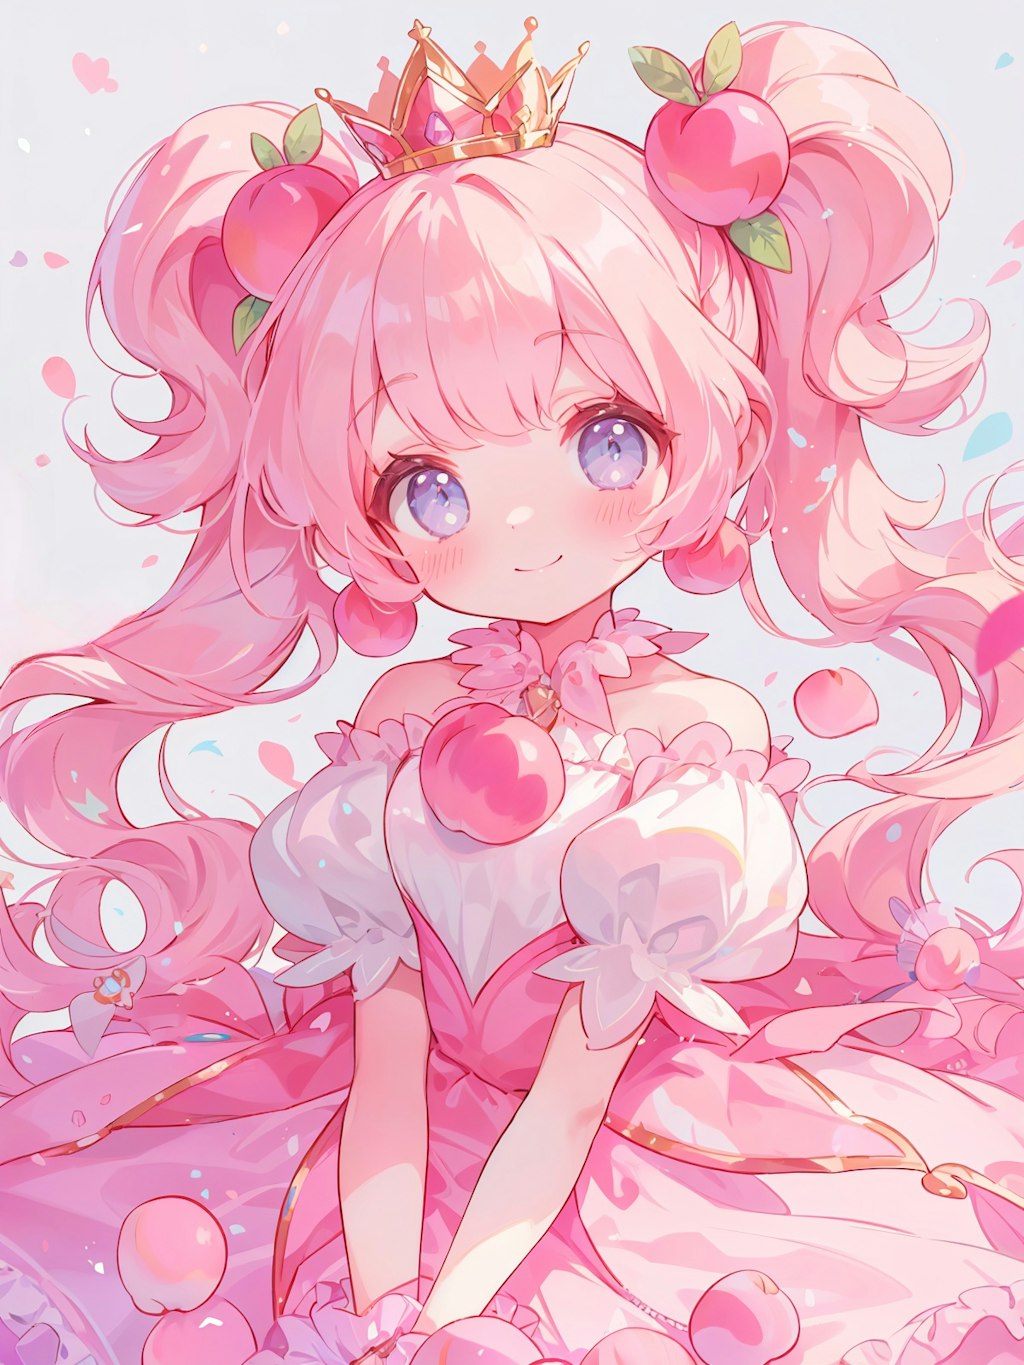 Peach Princess